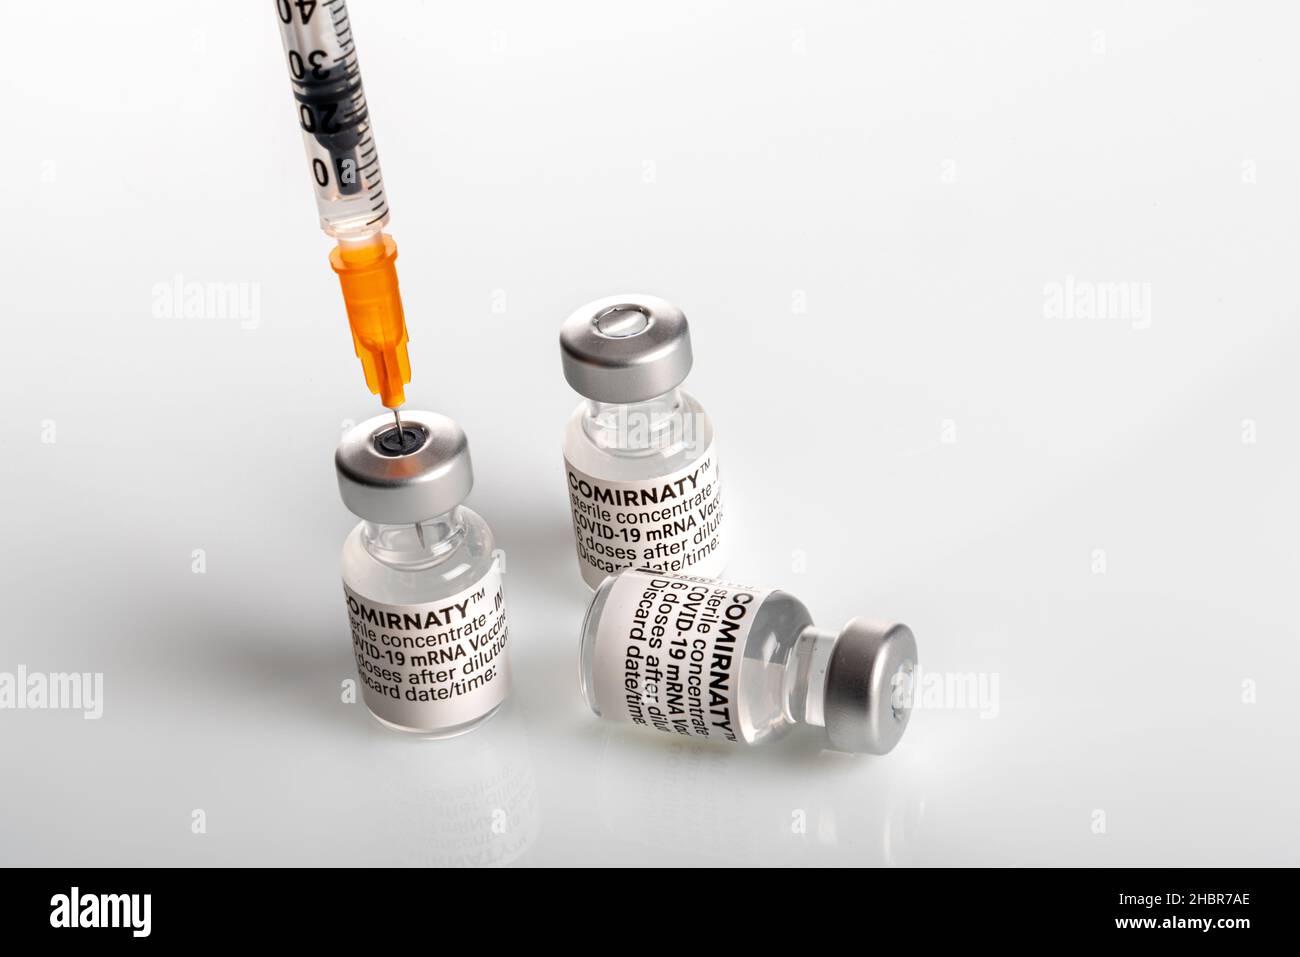 Turin, Italien - 18. Dezember 2021: Pfizer-BioNTech COVID-19-Impfstoff Comirnaty-Fläschchen, drei Fläschchen mit Spritze, die Impfstoffdosis ansaugt, dritte Dosis Conce Stockfoto